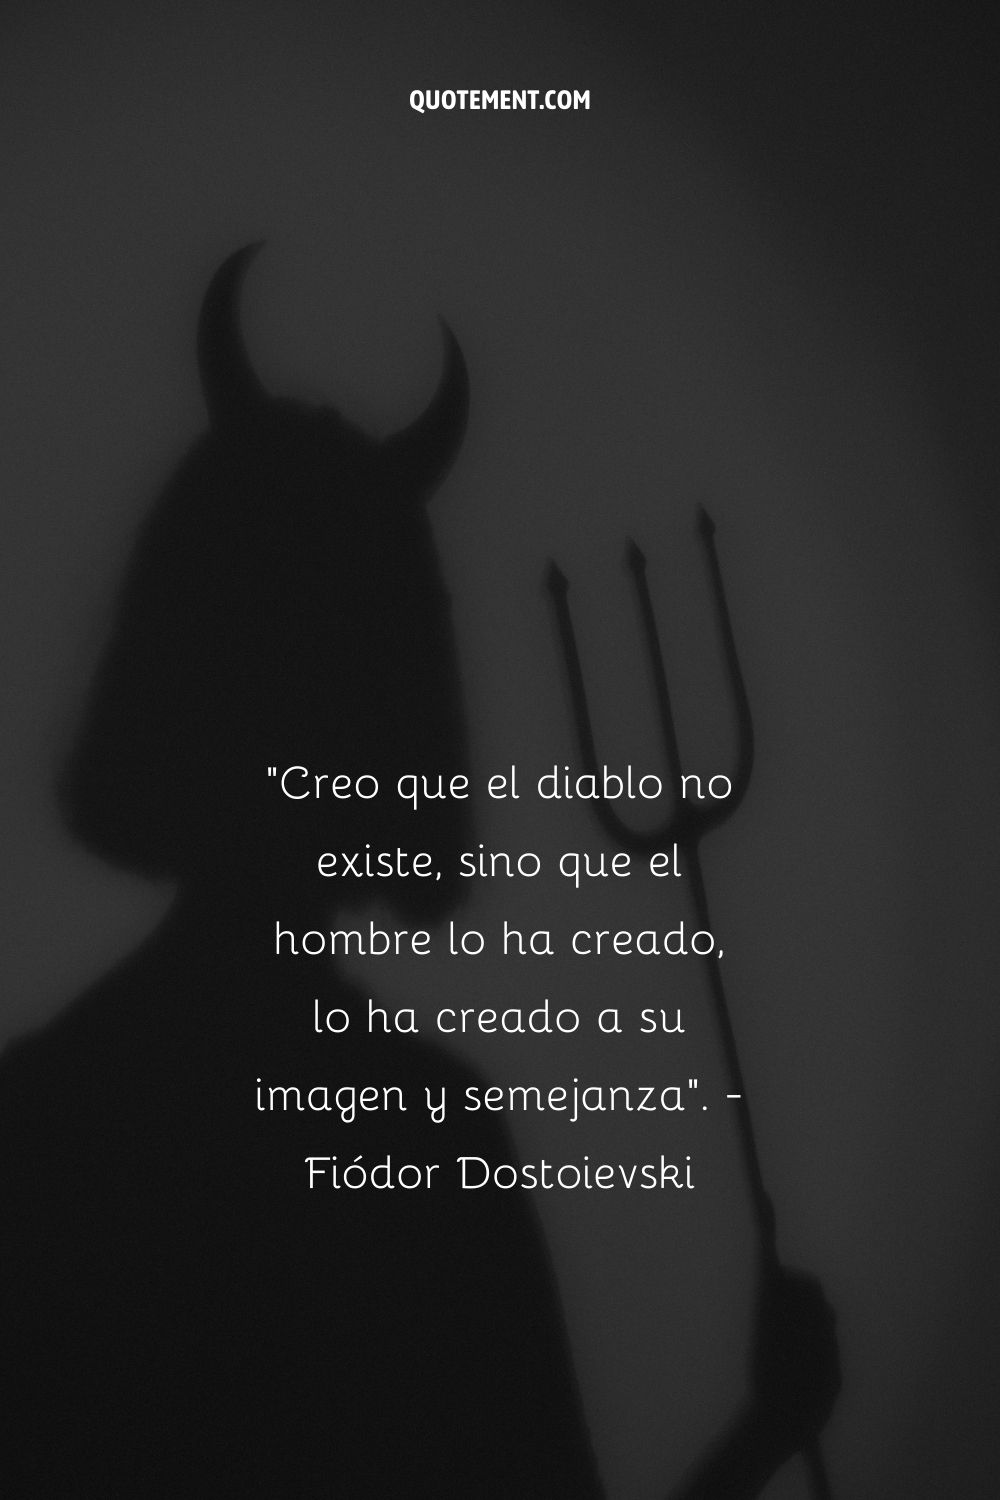 "Creo que el diablo no existe, sino que el hombre lo ha creado, lo ha creado a su imagen y semejanza". - Fiódor Dostoievski